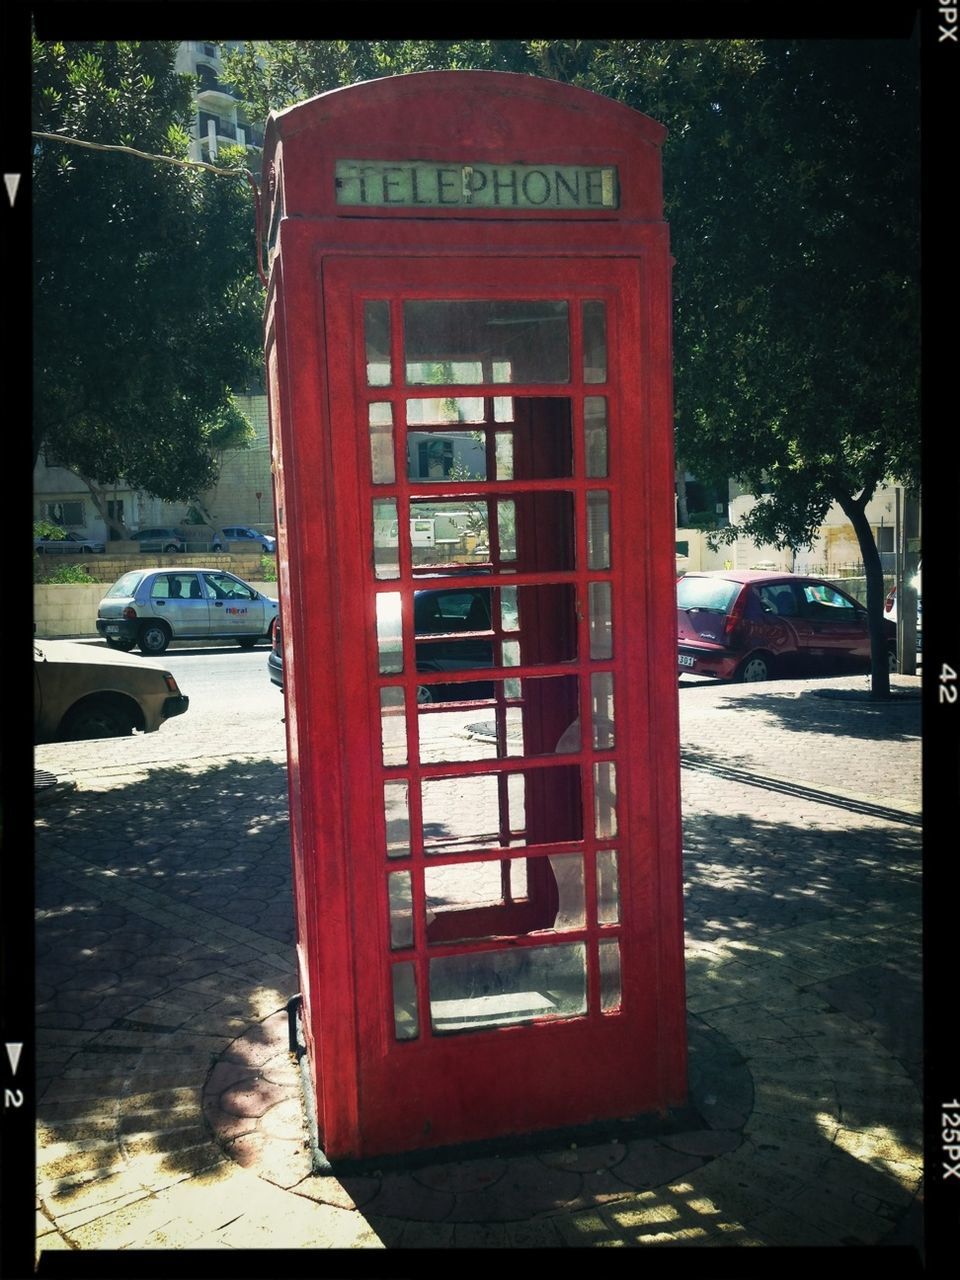 Telephone booth on roadside